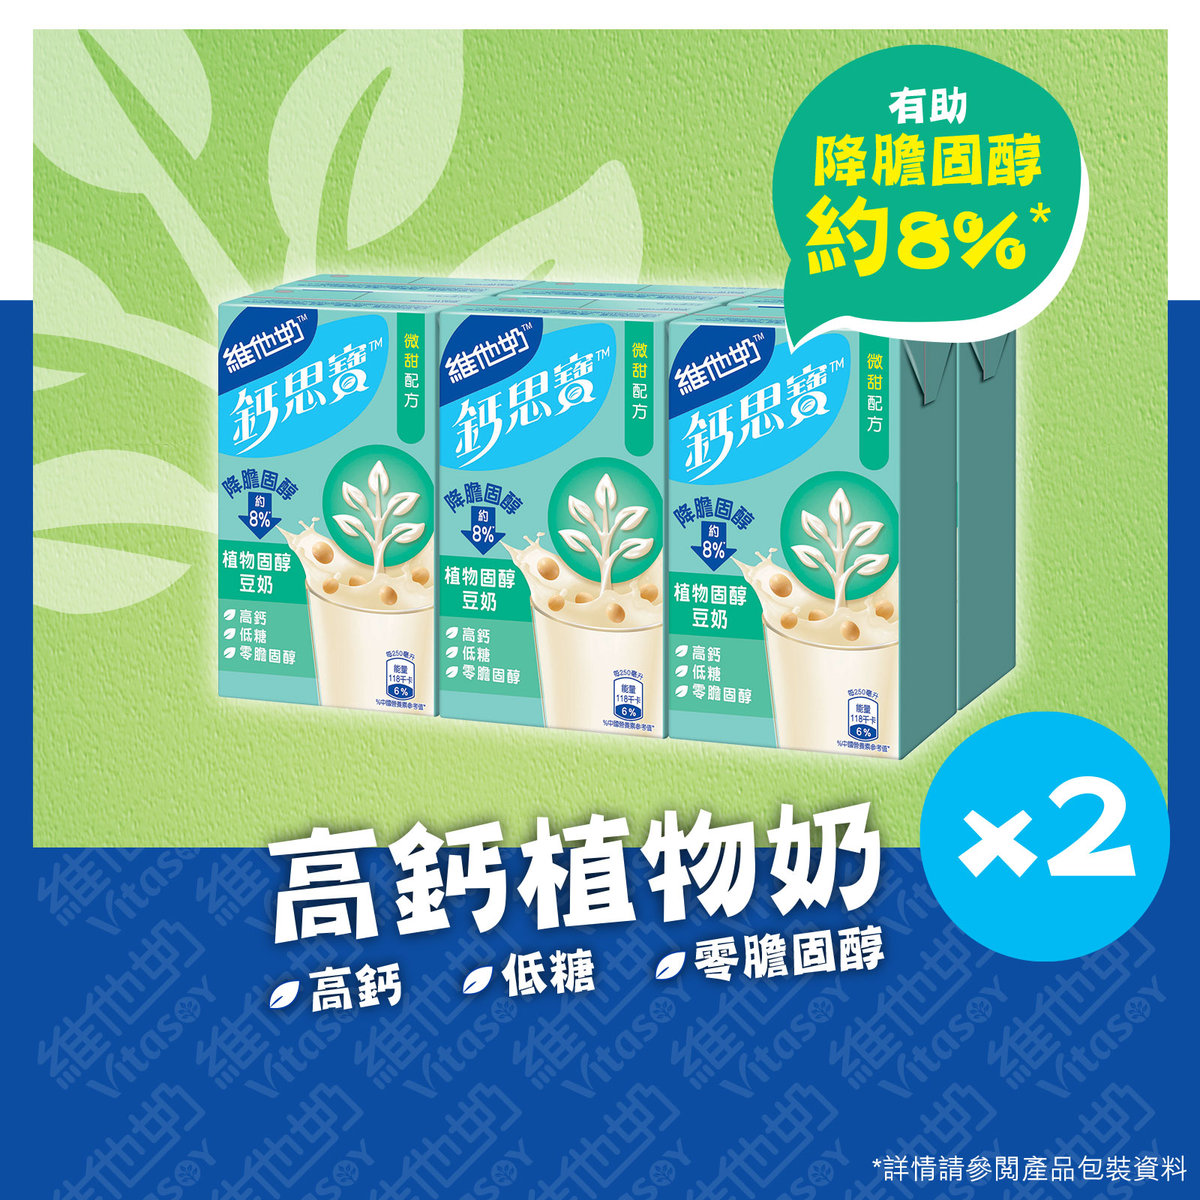 鈣思寶高鈣植物固醇豆奶 250毫升6包裝 x 2排 